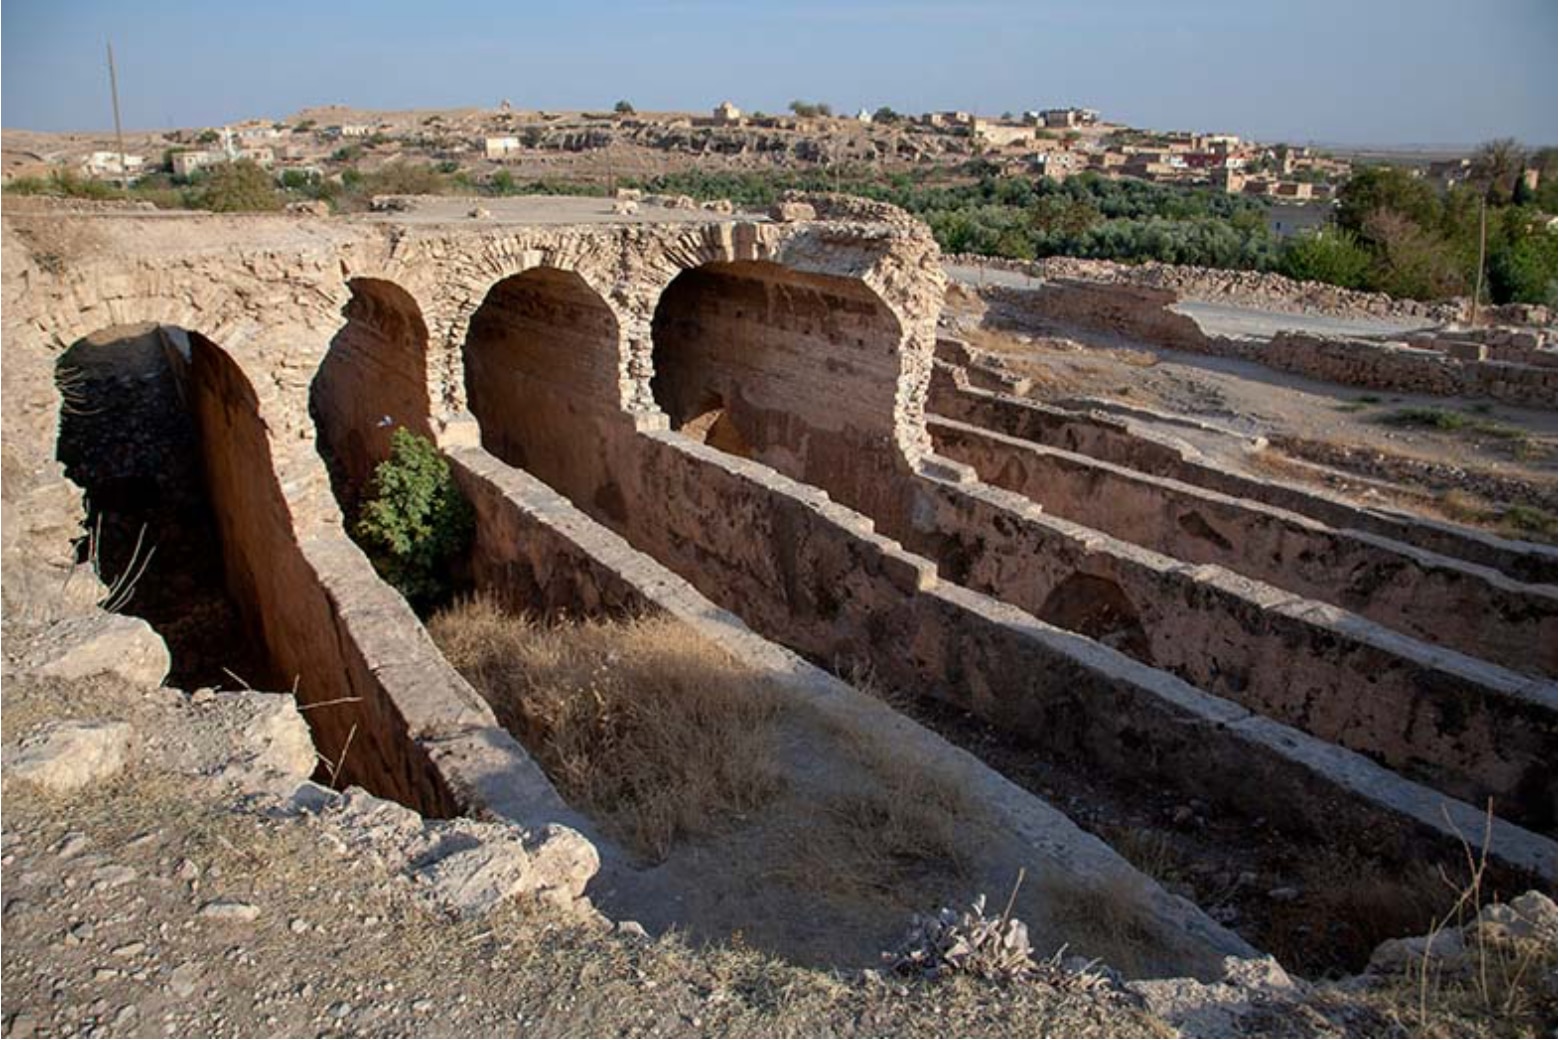 Xưa kia, bể chứa nước chảy từ trên núi xuống để người dân địa phương và binh lính La Mã đóng ở Dara sử dụng - Ảnh: Turkish Airlines Blog